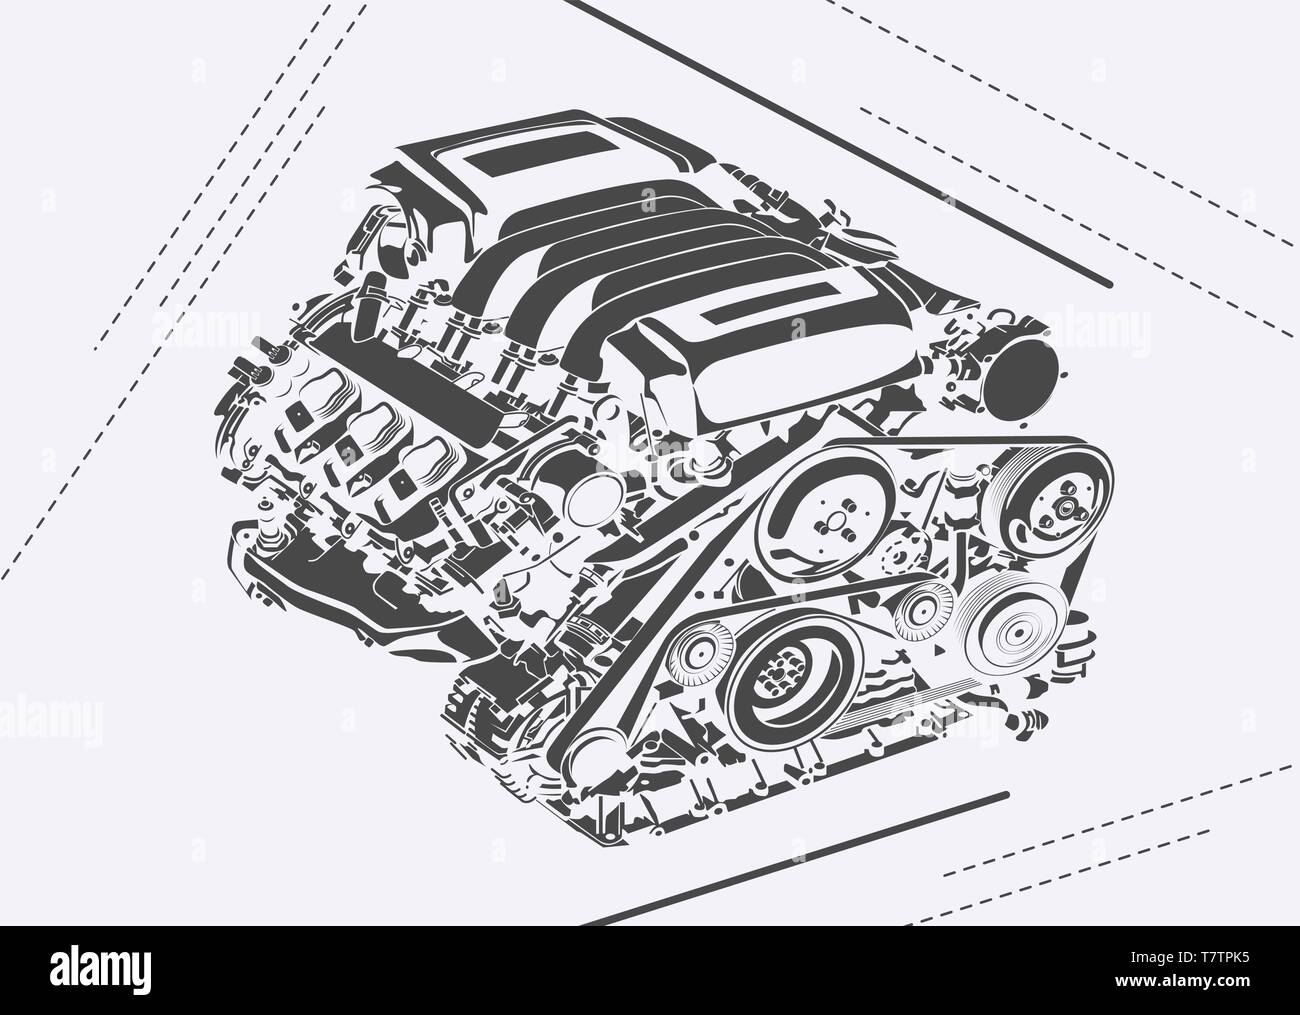 Vektor hoch detaillierte Darstellung von Auto Motor Stock Vektor